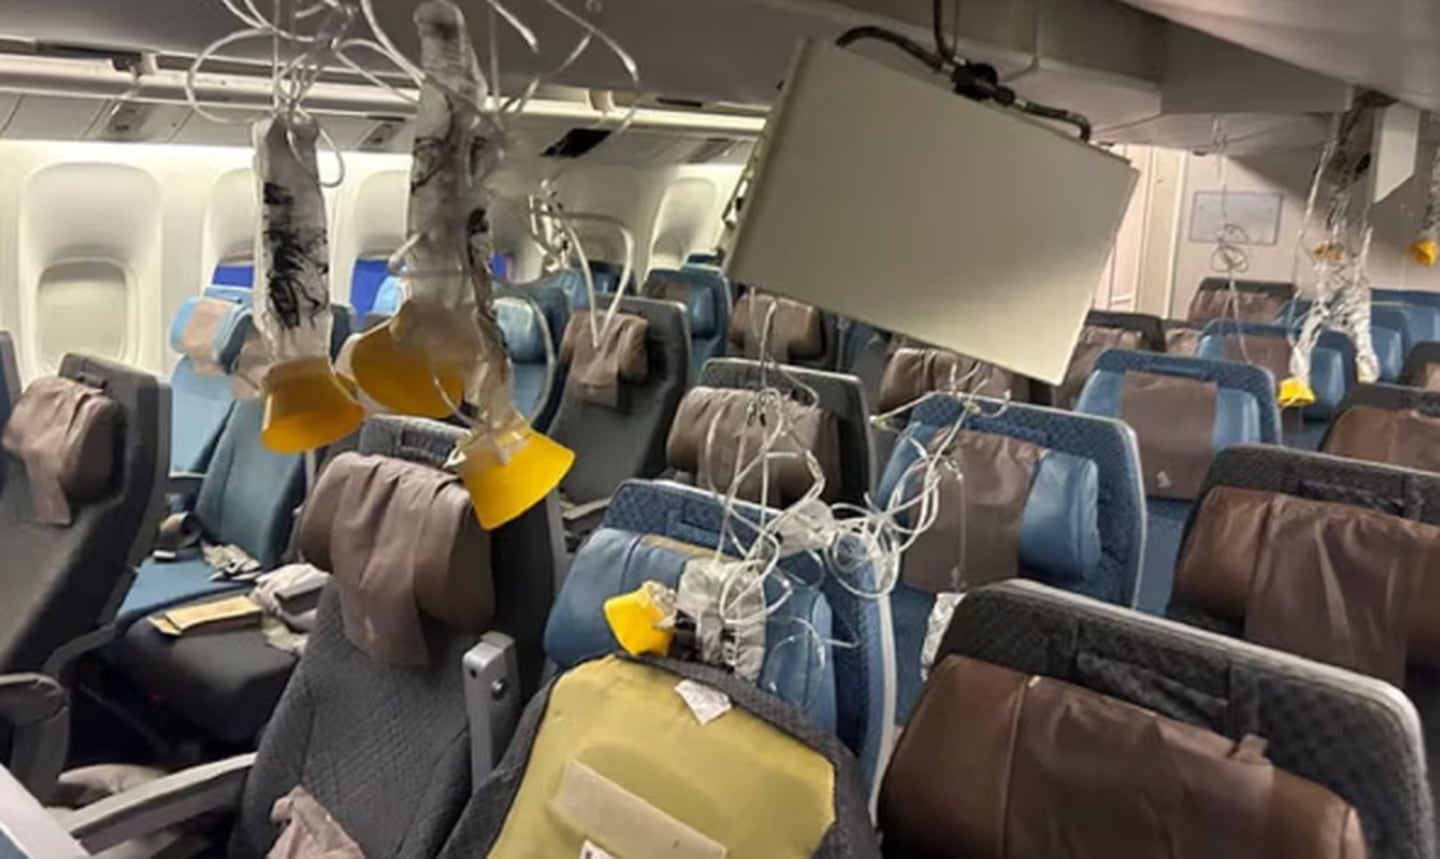 Turbulencias desataron el pánico en un vuelo de Singapore Airlines, que sufrió daños debido al fenómeno. Foto: El Universal de México